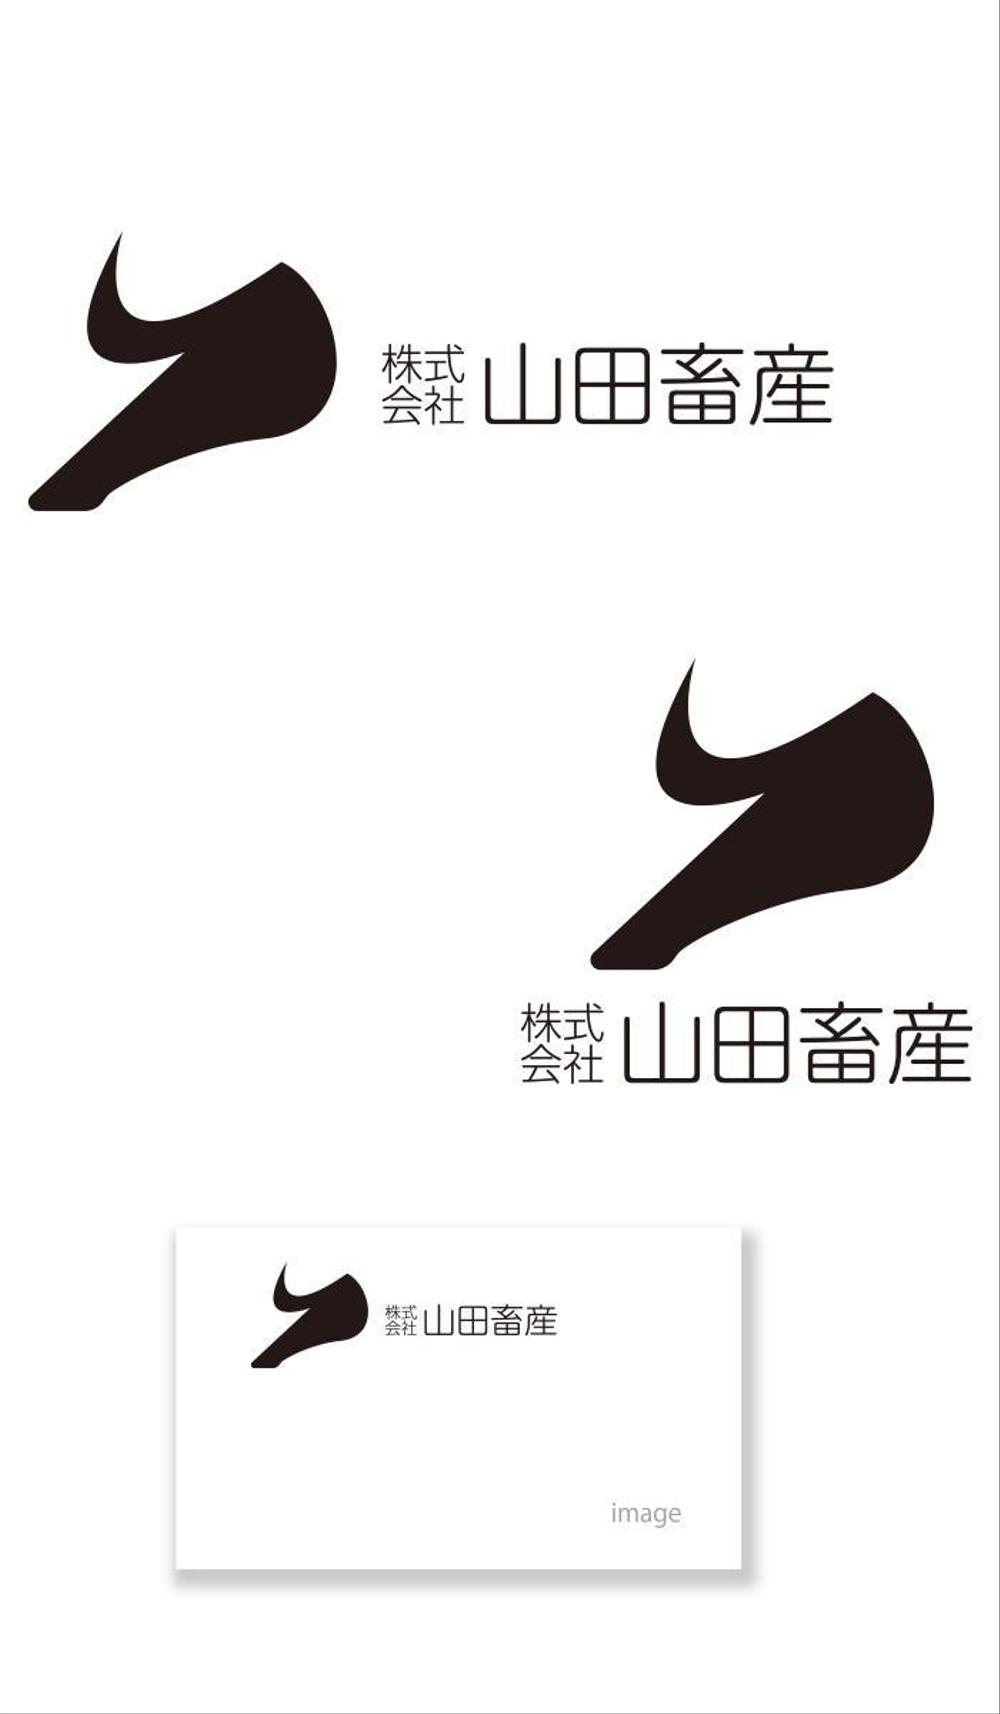 山田畜産 logo_serve.jpg